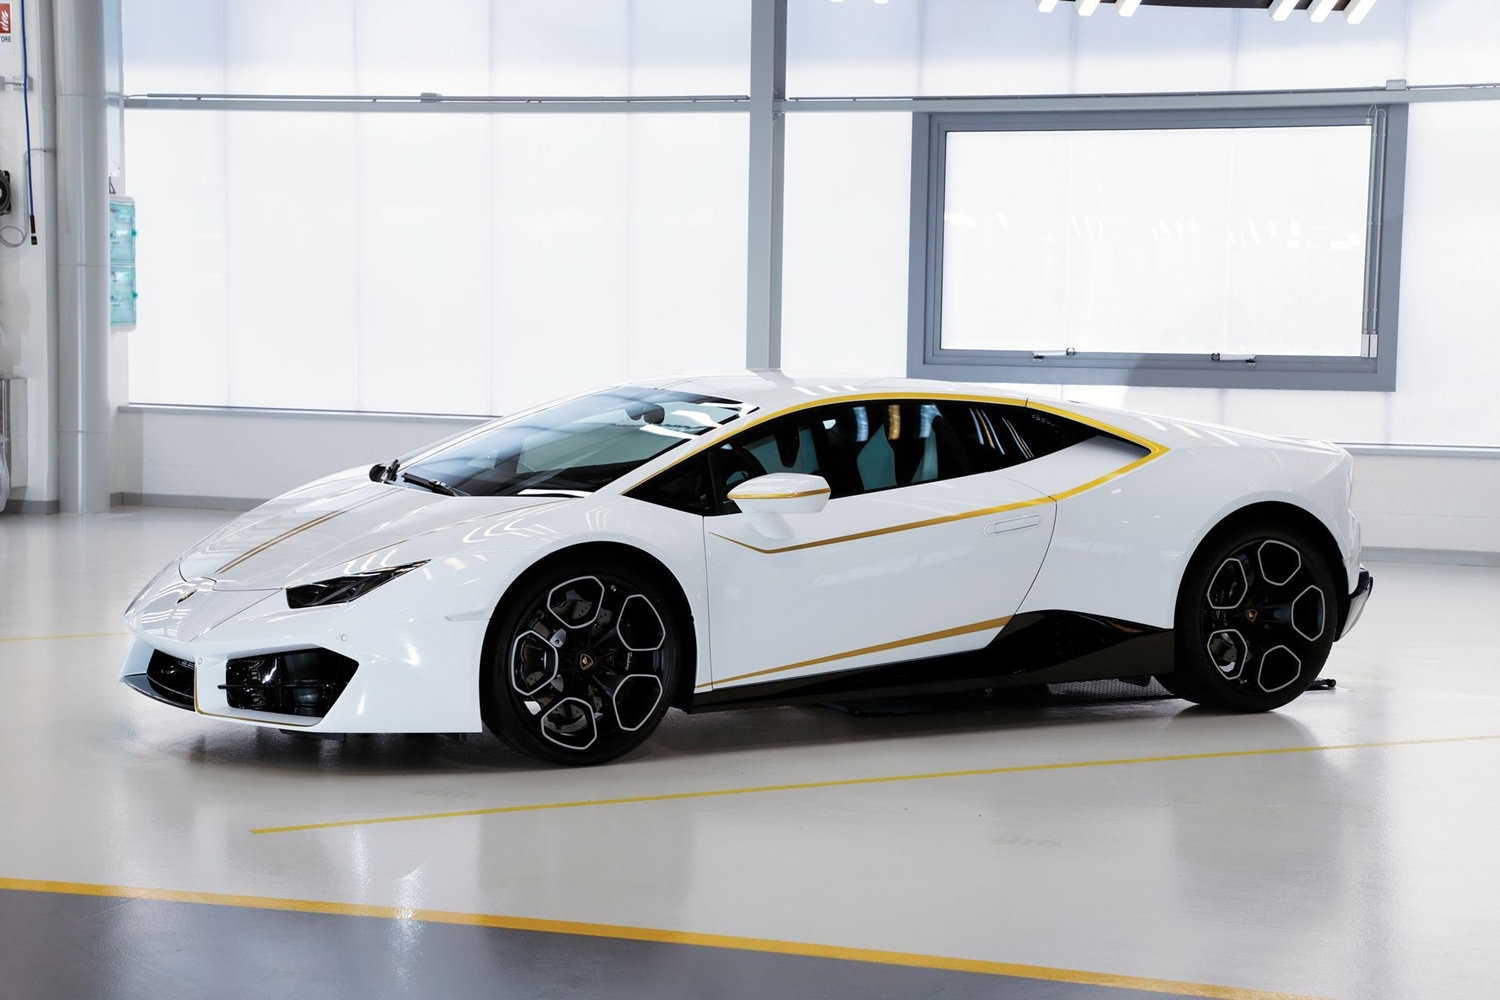 Már nem sokáig marad a pápáé ez a gyönyörű Lamborghini 7